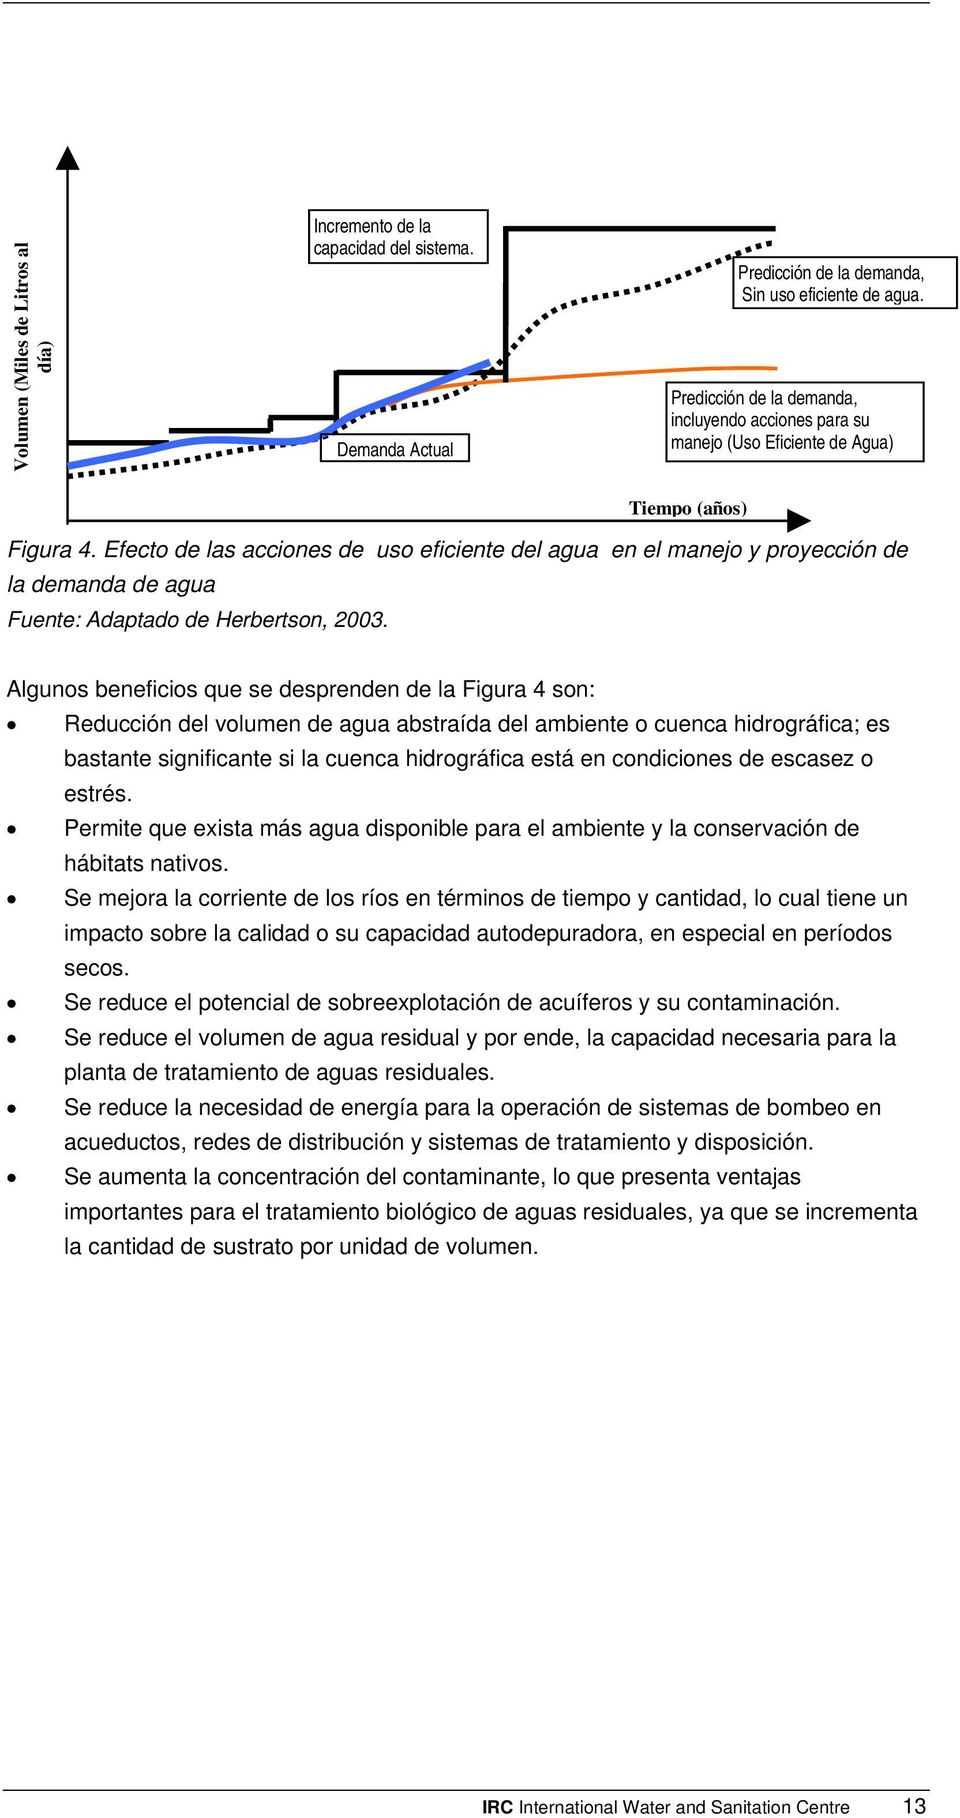 Efecto de las acciones de uso eficiente del agua en el manejo y proyección de la demanda de agua Fuente: Adaptado de Herbertson, 2003.